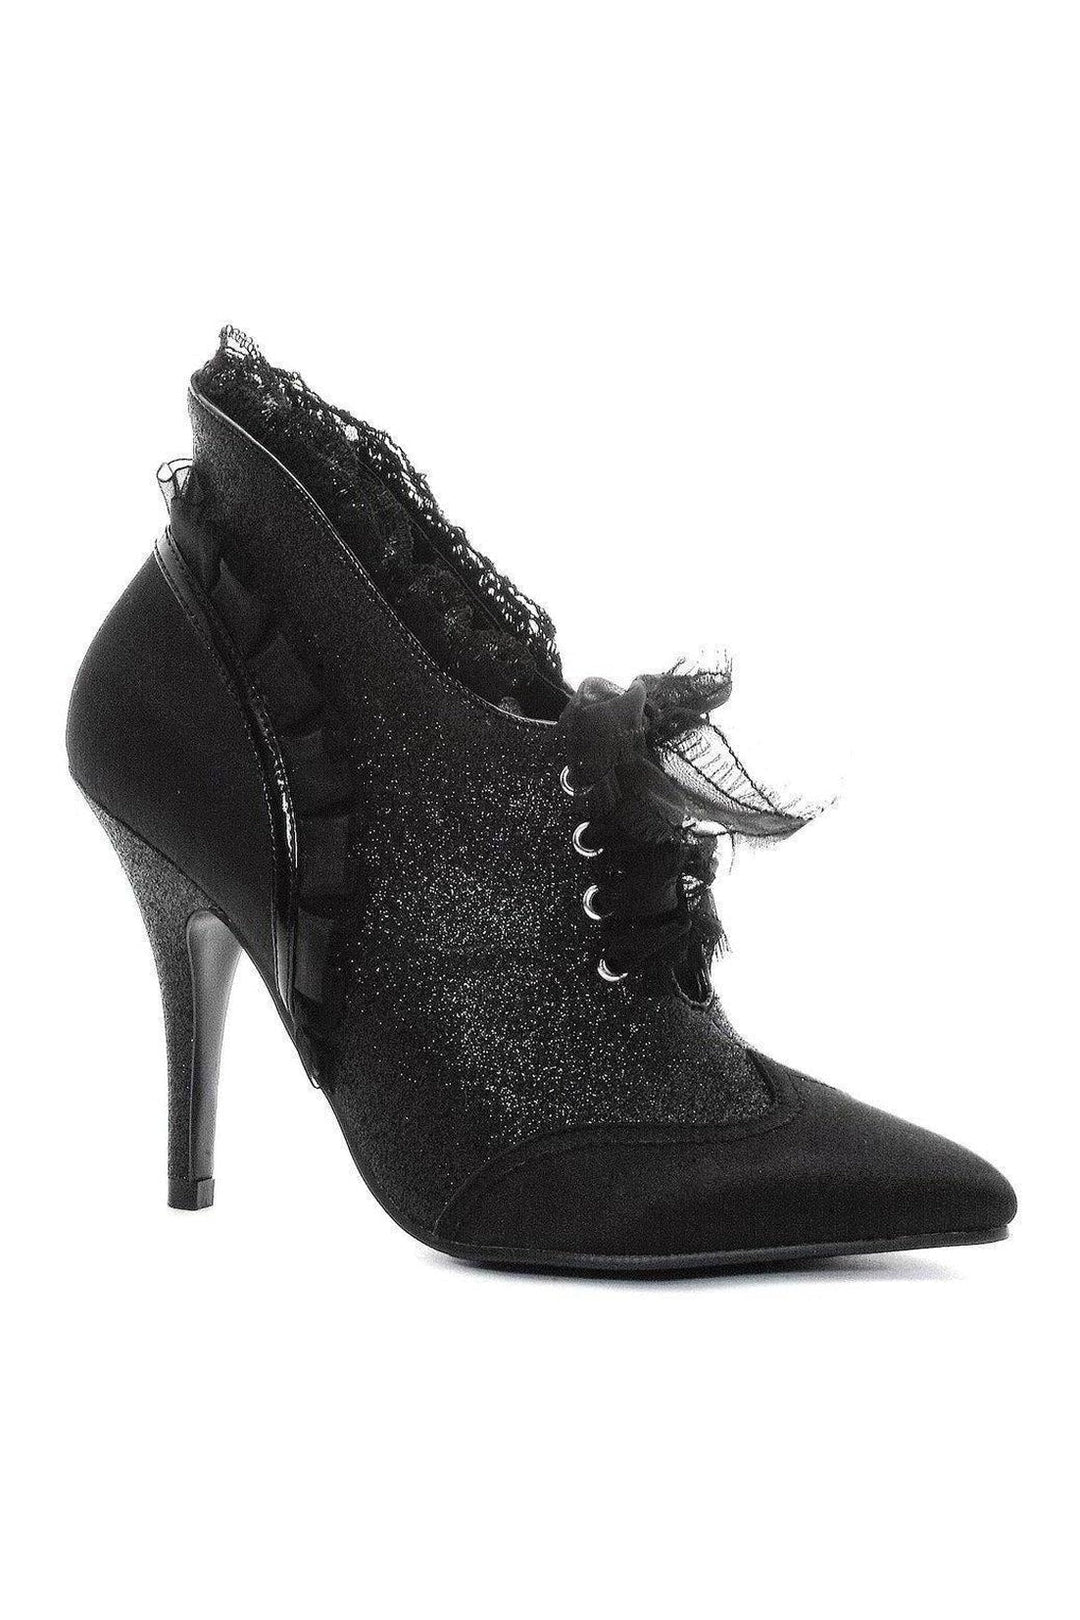 413-MABEL Costume Pump | Black Faux Leather-Ellie Shoes-SEXYSHOES.COM